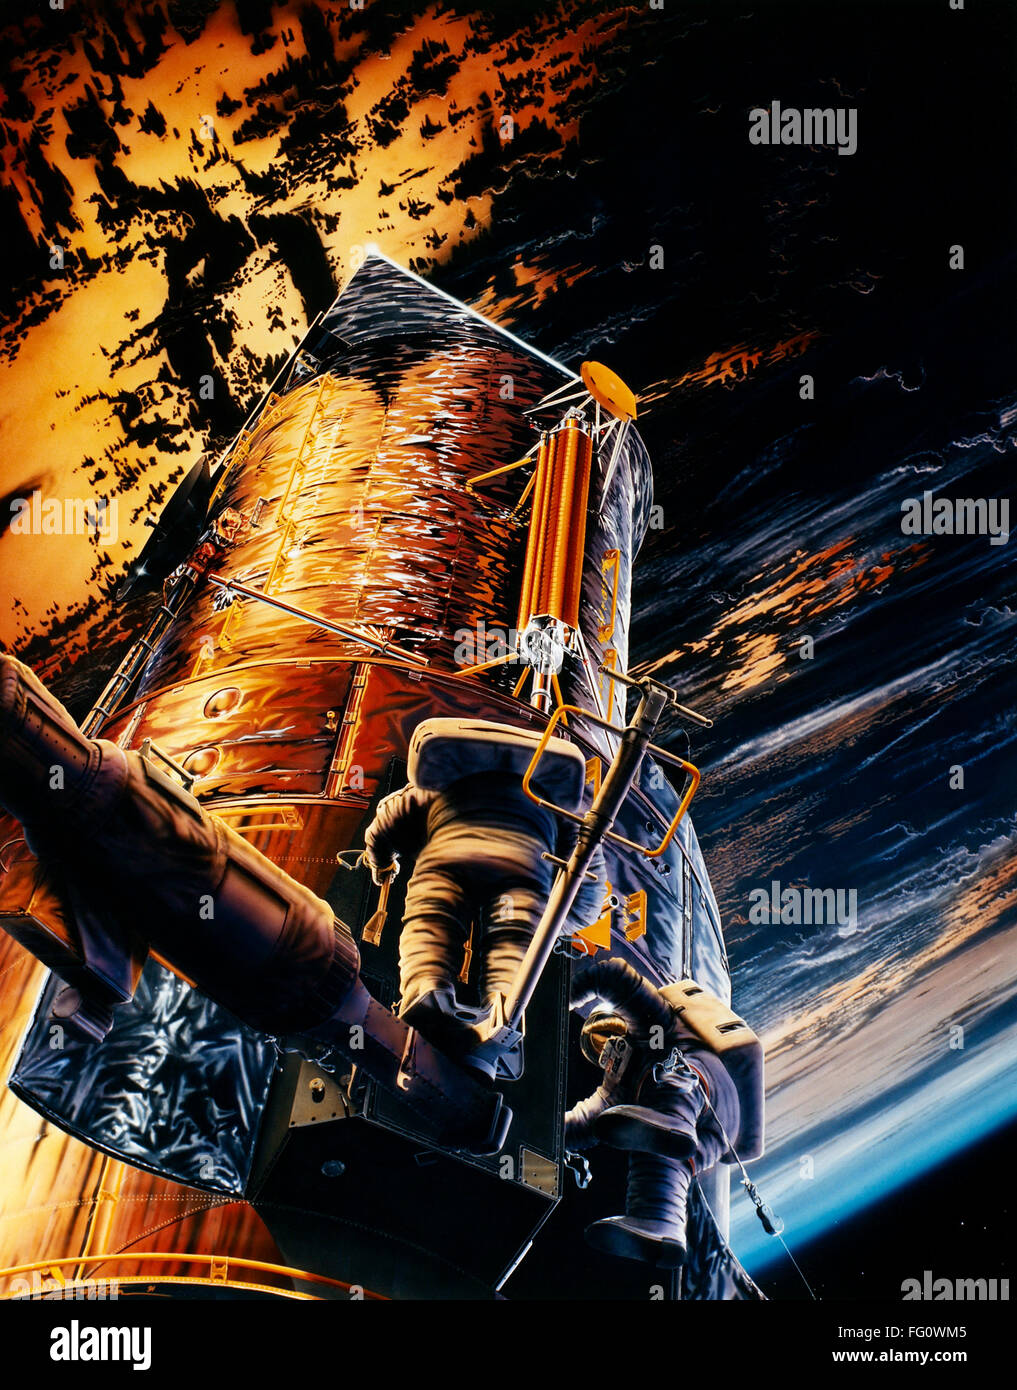 HUBBLE-TELESKOP: COSTAR. /nInstallation die korrektive Optik Space Telescope  Axial Ersatz (COSTAR) Instrument zur Verbesserung der  Hubble-Weltraumteleskop. Gemälde von Scott Kahler, c1993 Stockfotografie -  Alamy